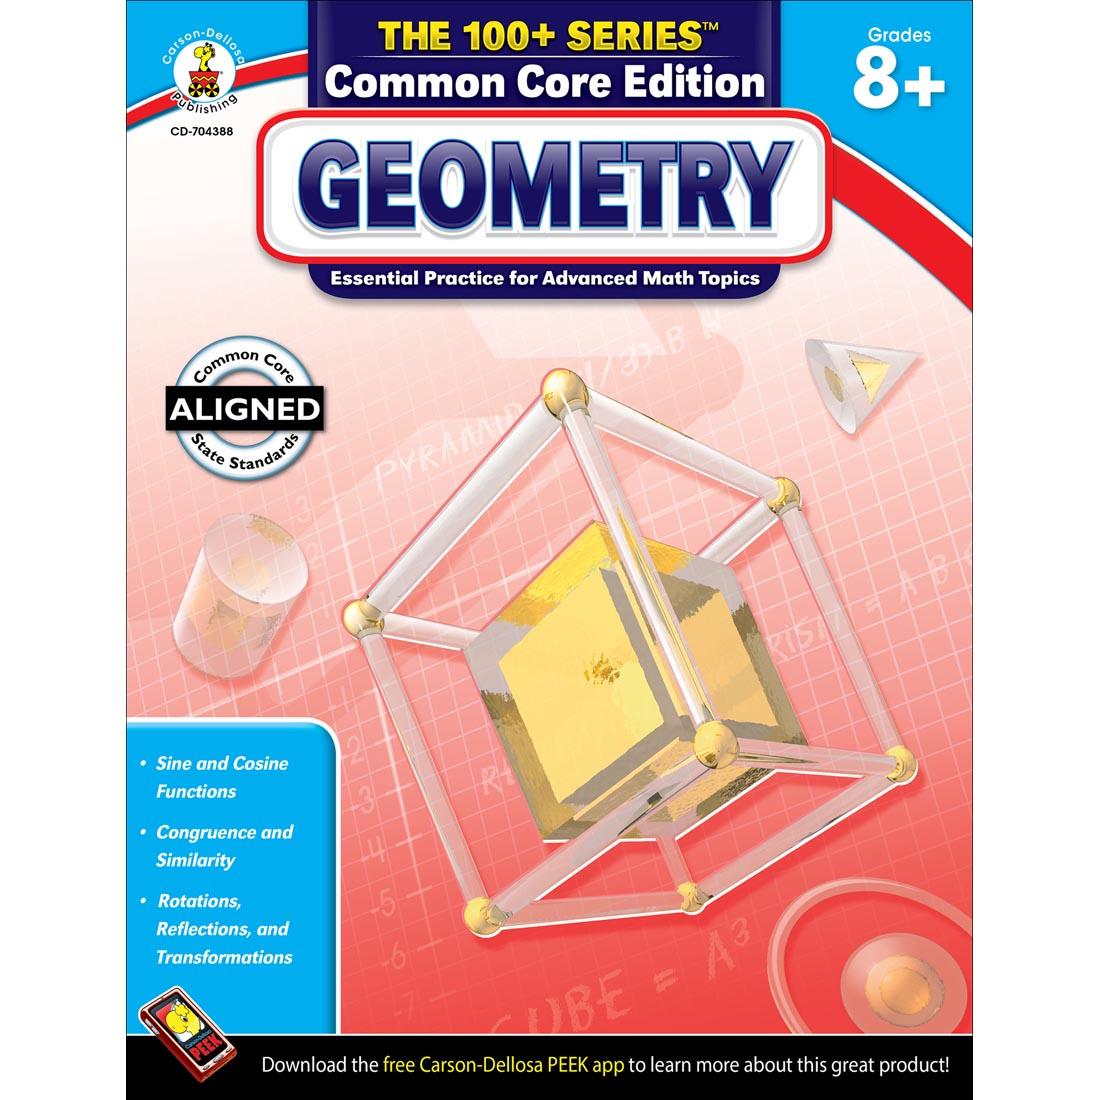 The 100+ Series Common Core Edition Geometry Book by Carson Dellosa